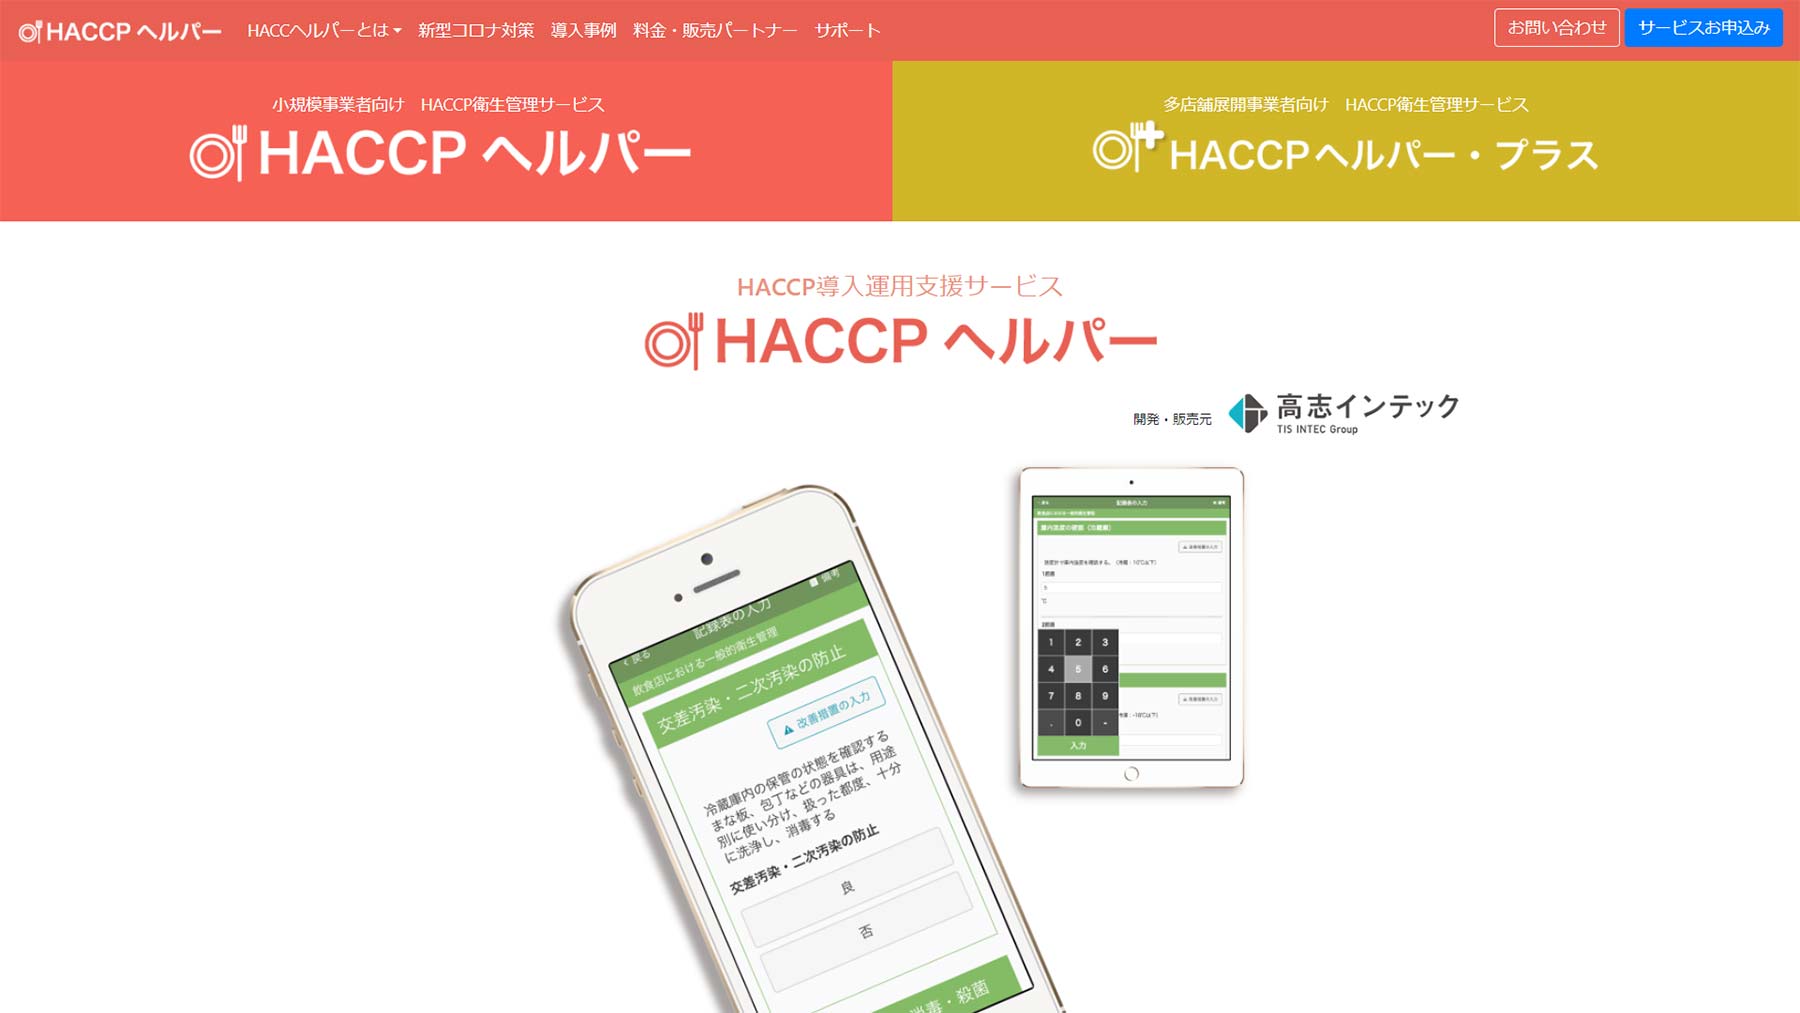 HACCP ヘルパー公式Webサイト